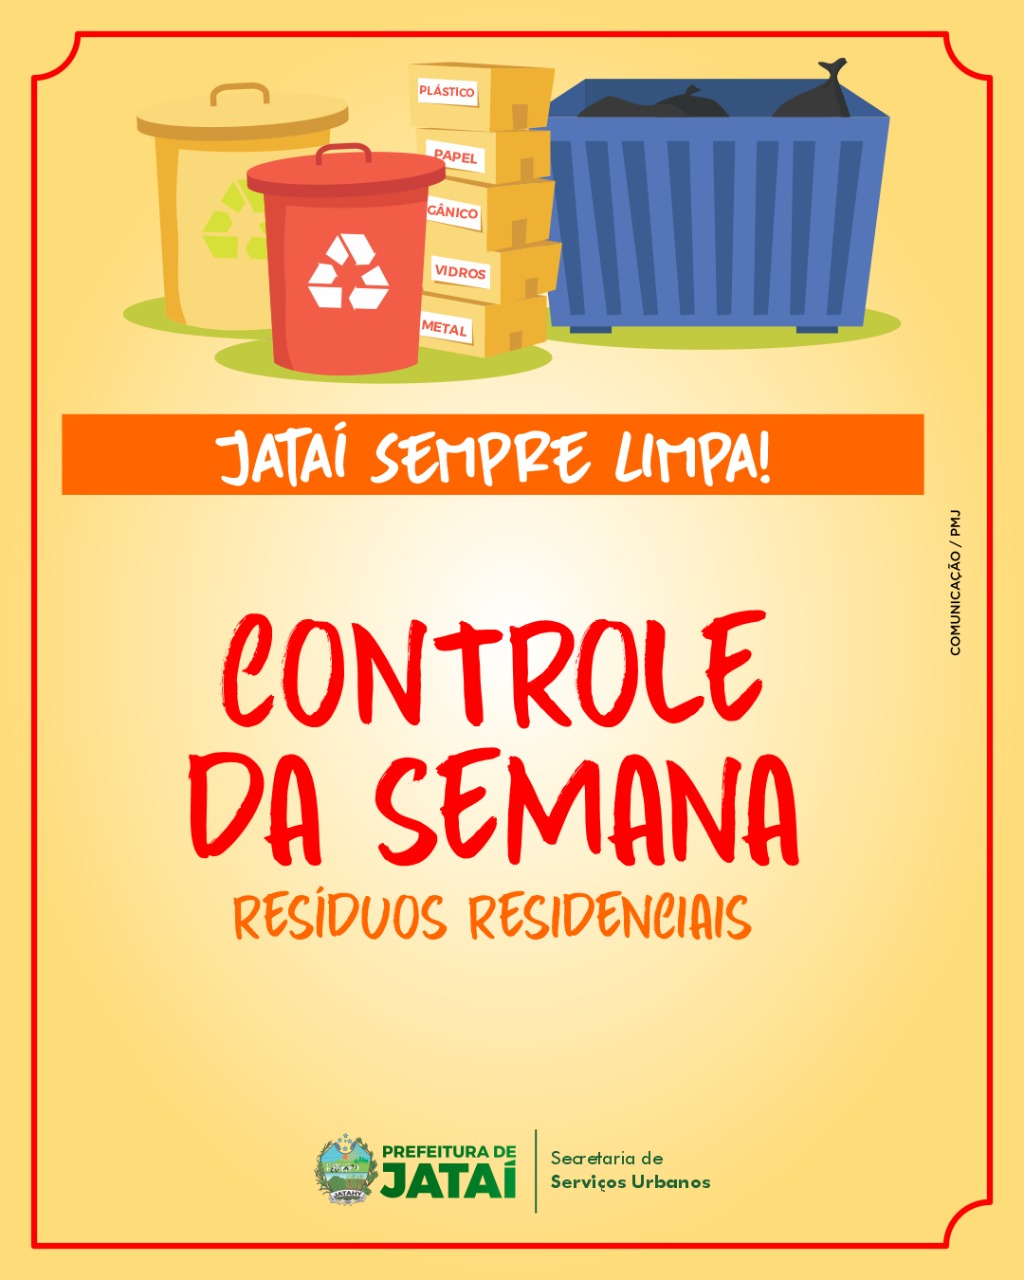 Print Map Quiz: GeoReciclagem - Coleta Seletiva (3º Ensino Fundamental -  reciclagem - coleta seletiva - meio ambiente)